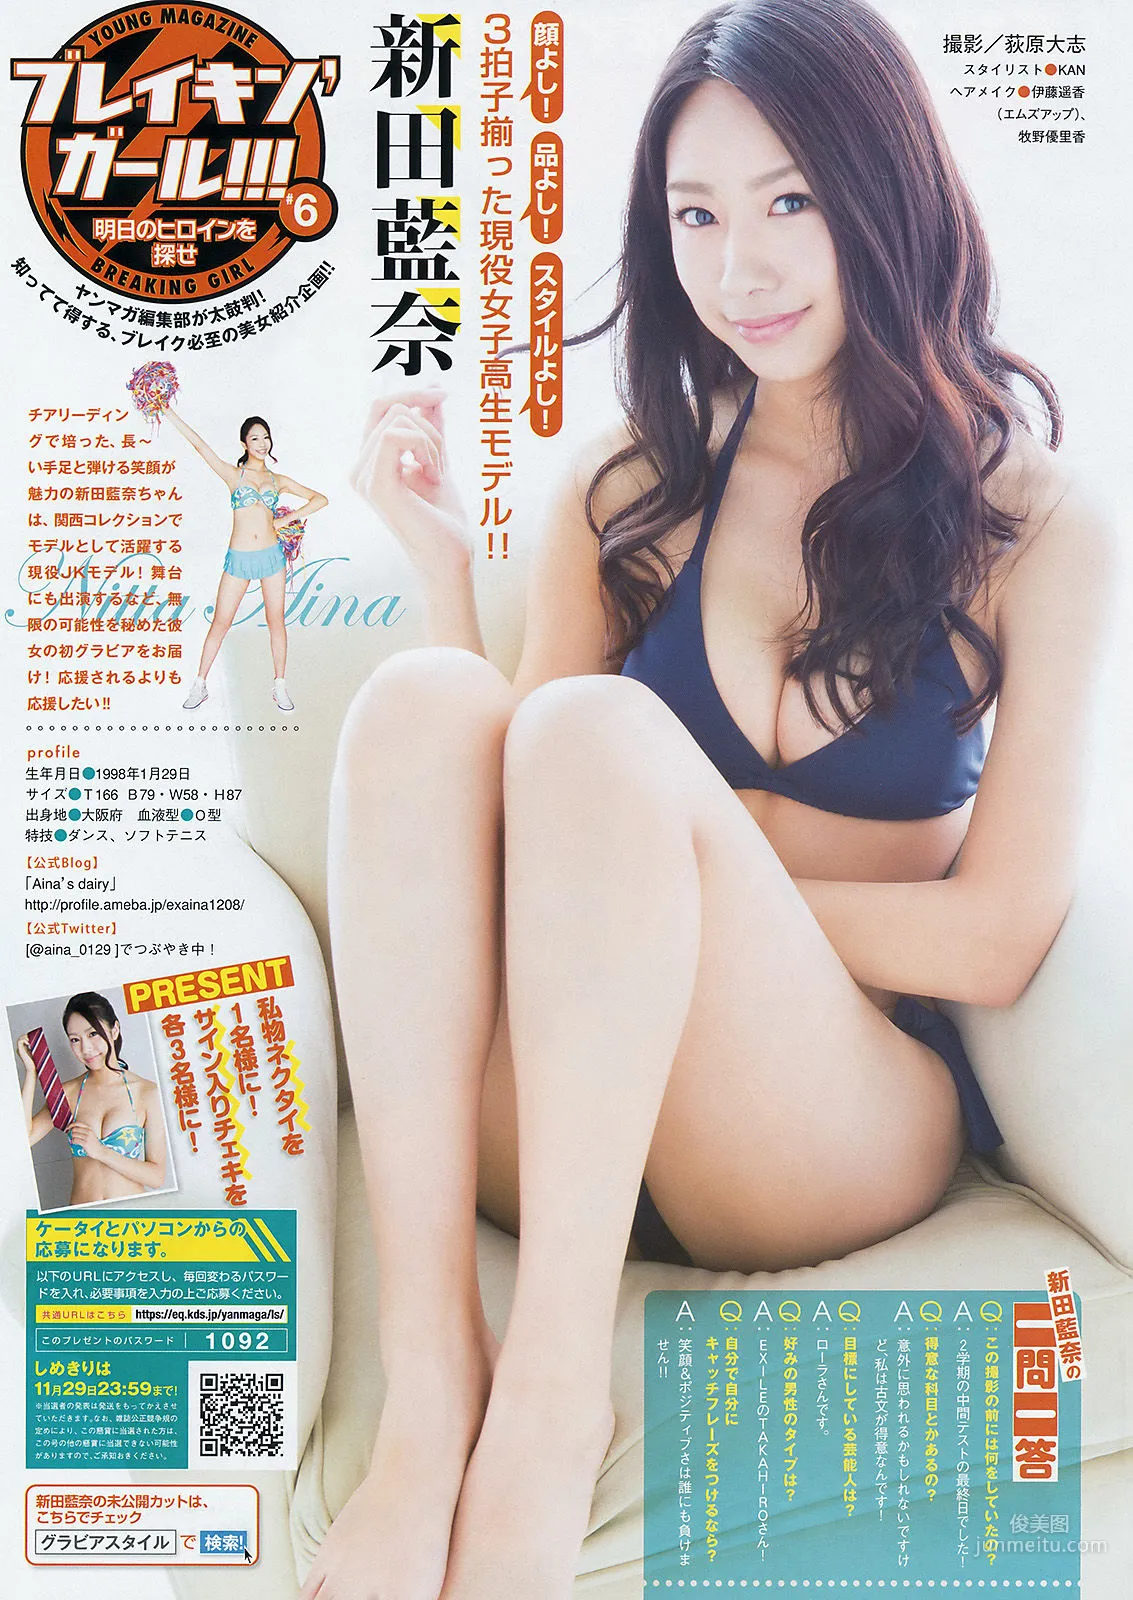 [Young Magazine] 宮脇咲良 松井珠理奈 2015年No.51 写真杂志8